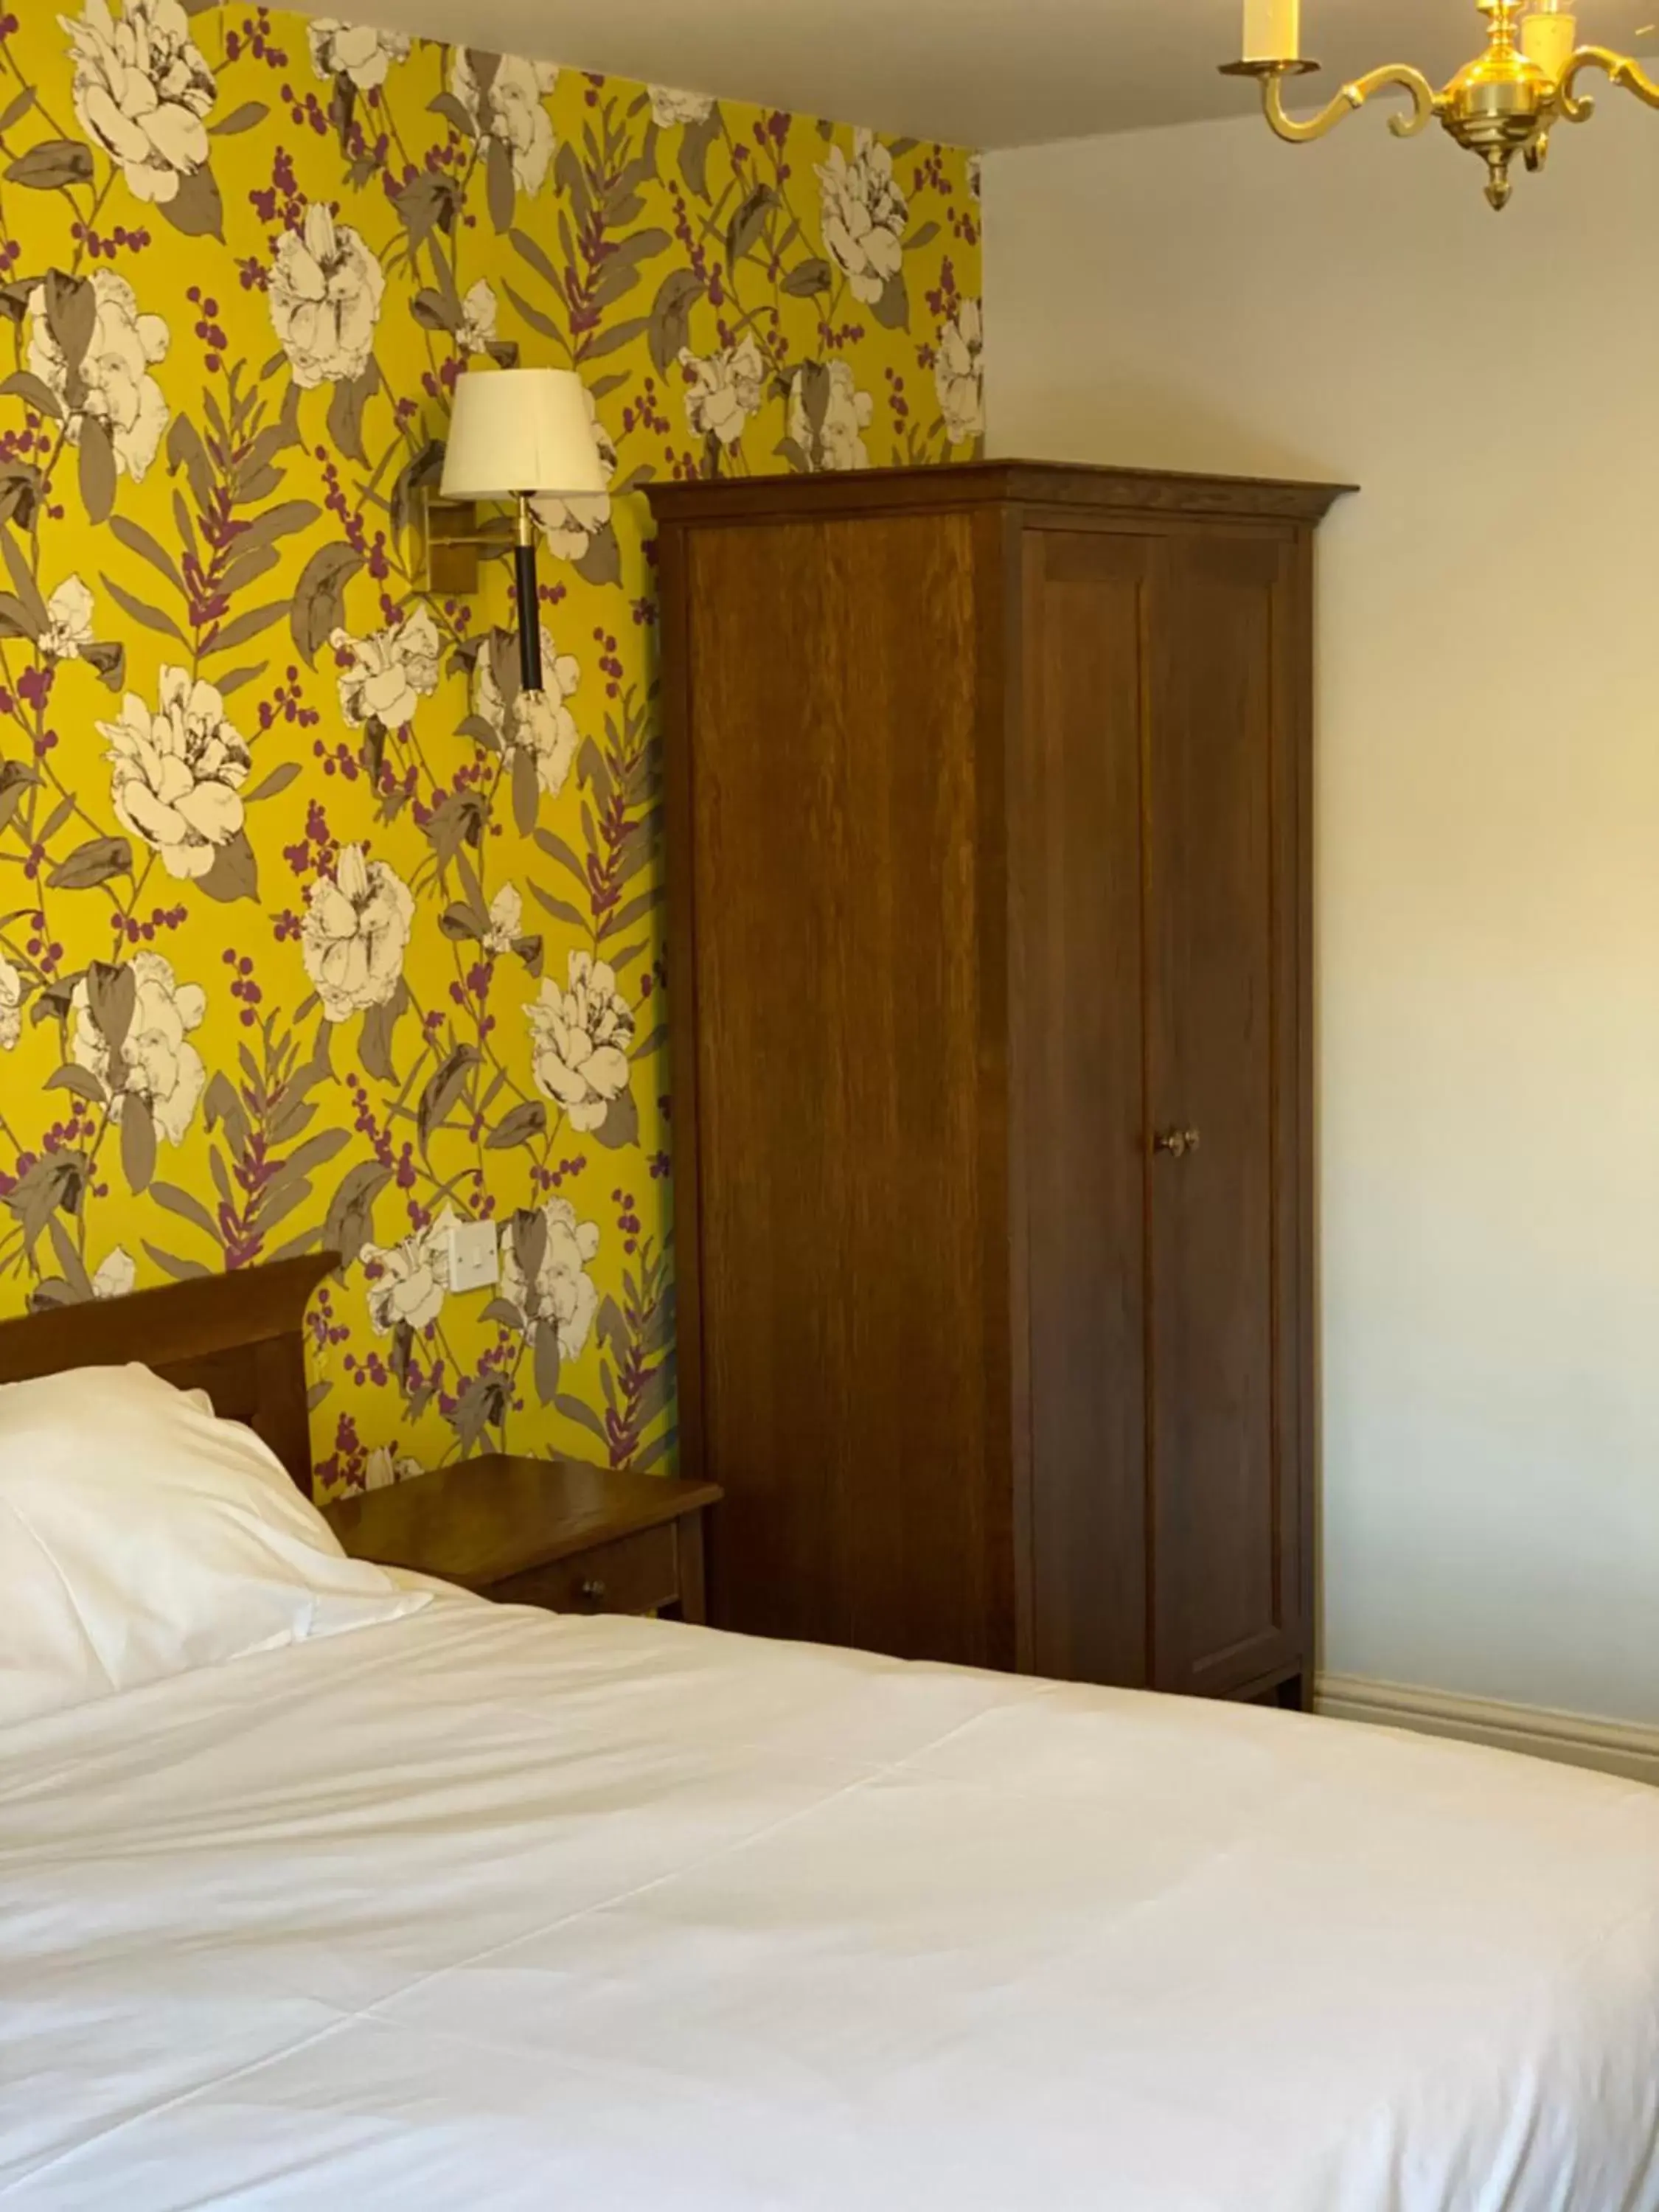 Bedroom, Bed in Castle Inn by Greene King Inns